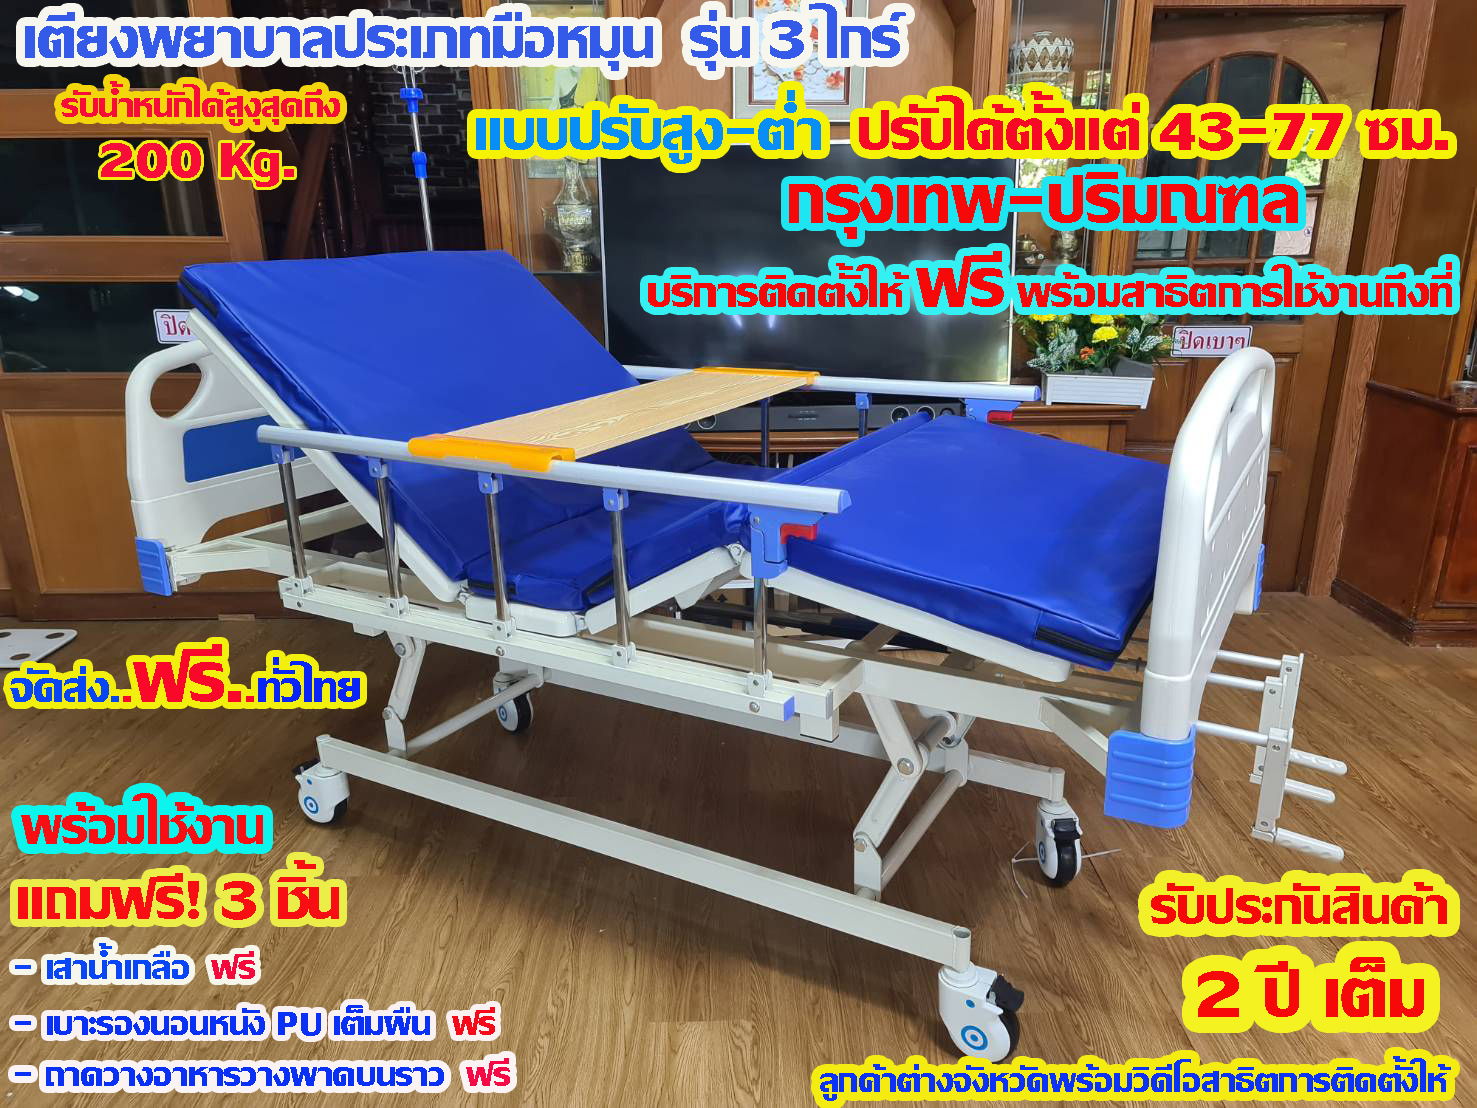 เตียงพยาบาล/เตียงผู้ป่วย/เตียงผู้สูงอายุประเภทมือหมุน รุ่น 3 ไกร์ แบบปรับยกสูง-ต่ำได้( Multi-function elderly bed ID220)